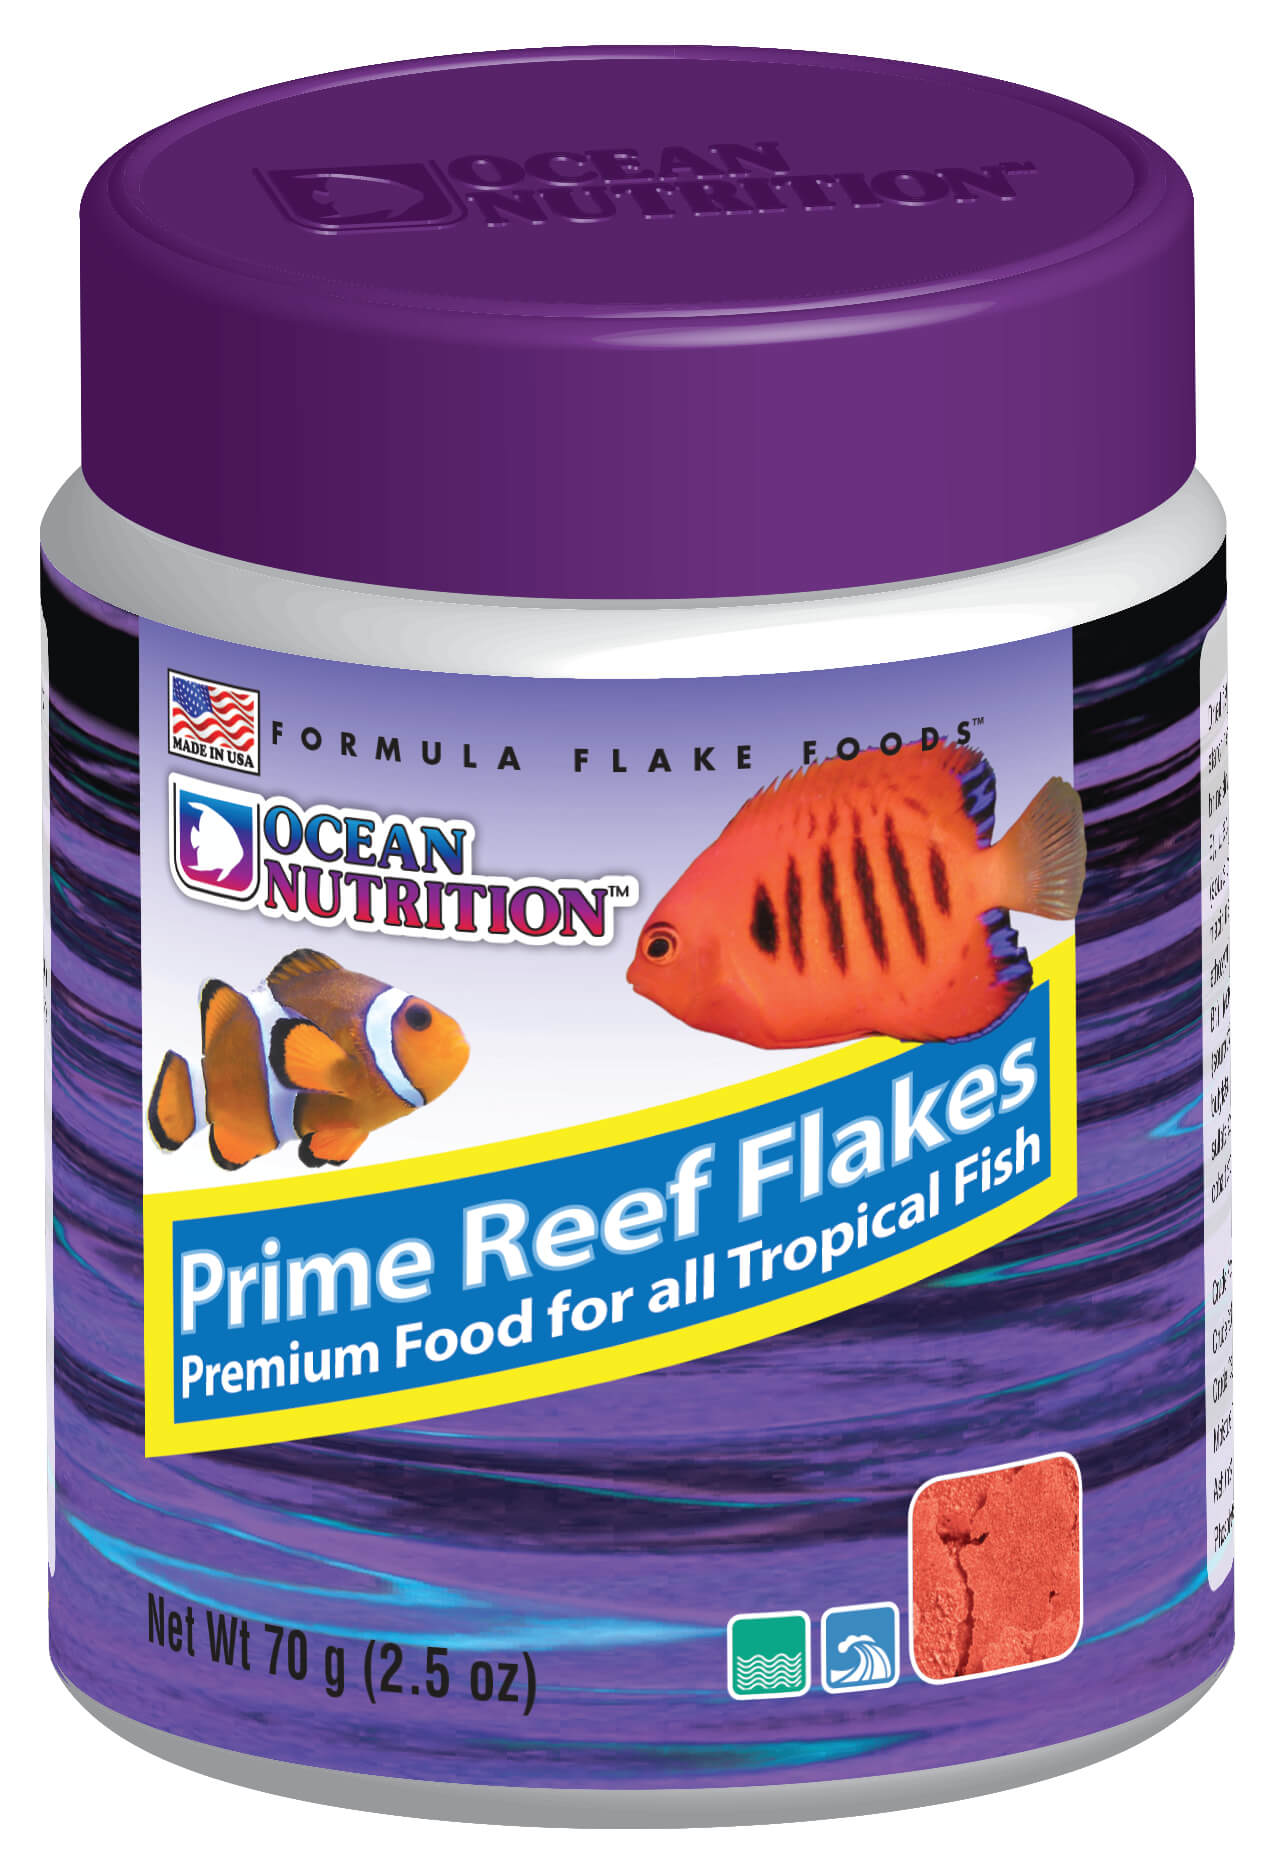 Ocean Nutrition Prime Reef Flake 2.5oz